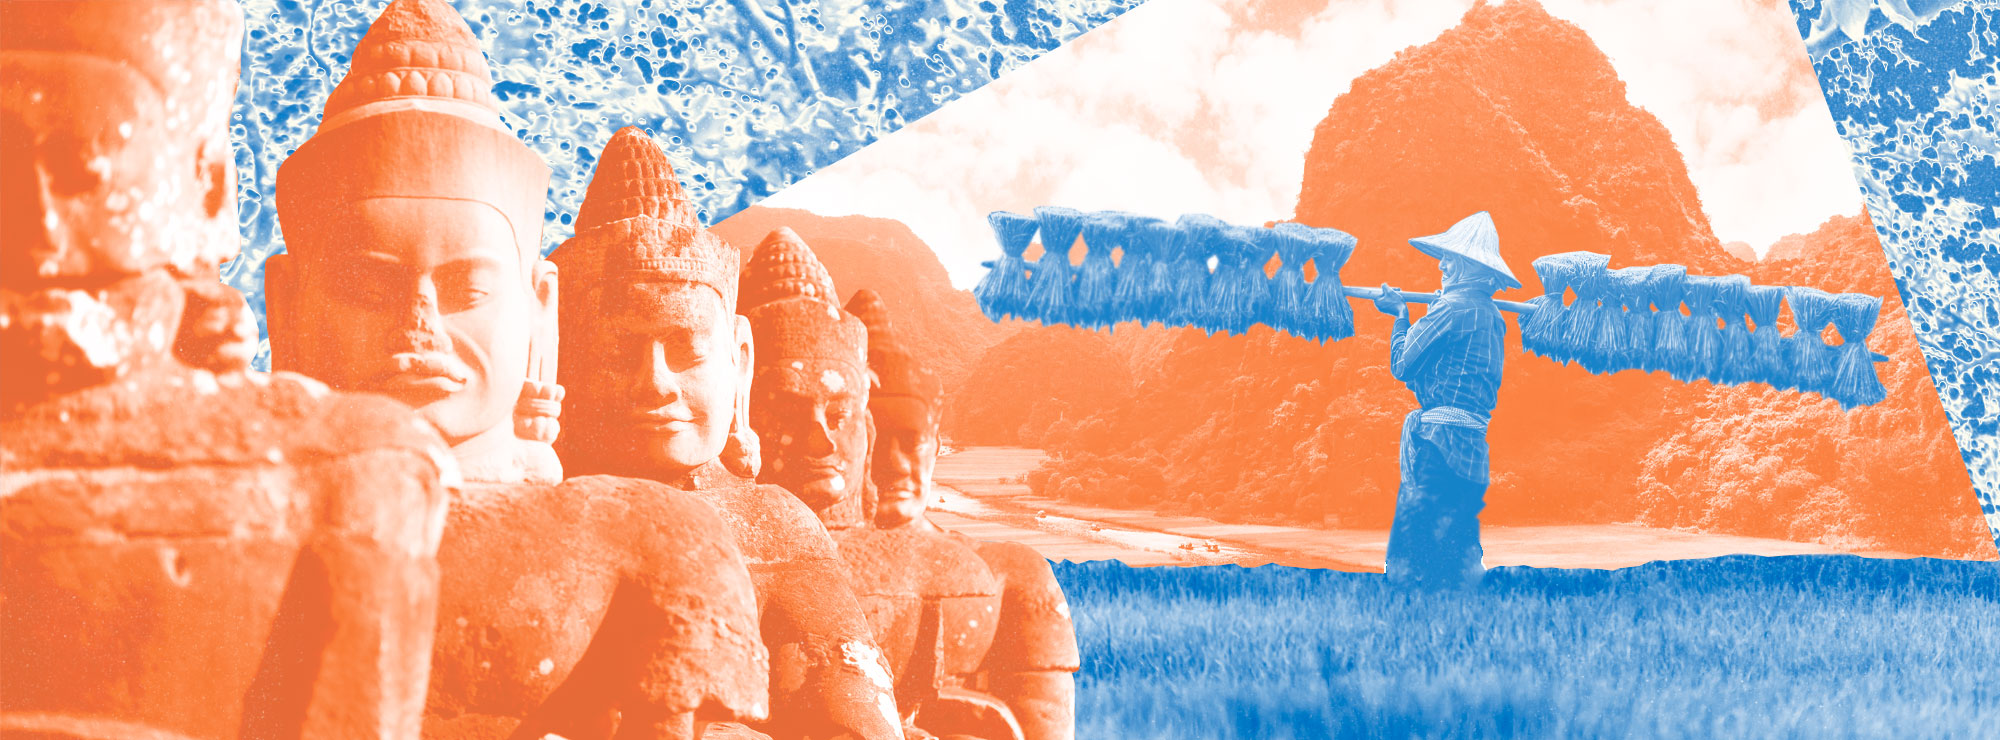 Полноразмерная обложка поста на тему: Путеводитель по Камбодже: топ мест, которые стоит посетить